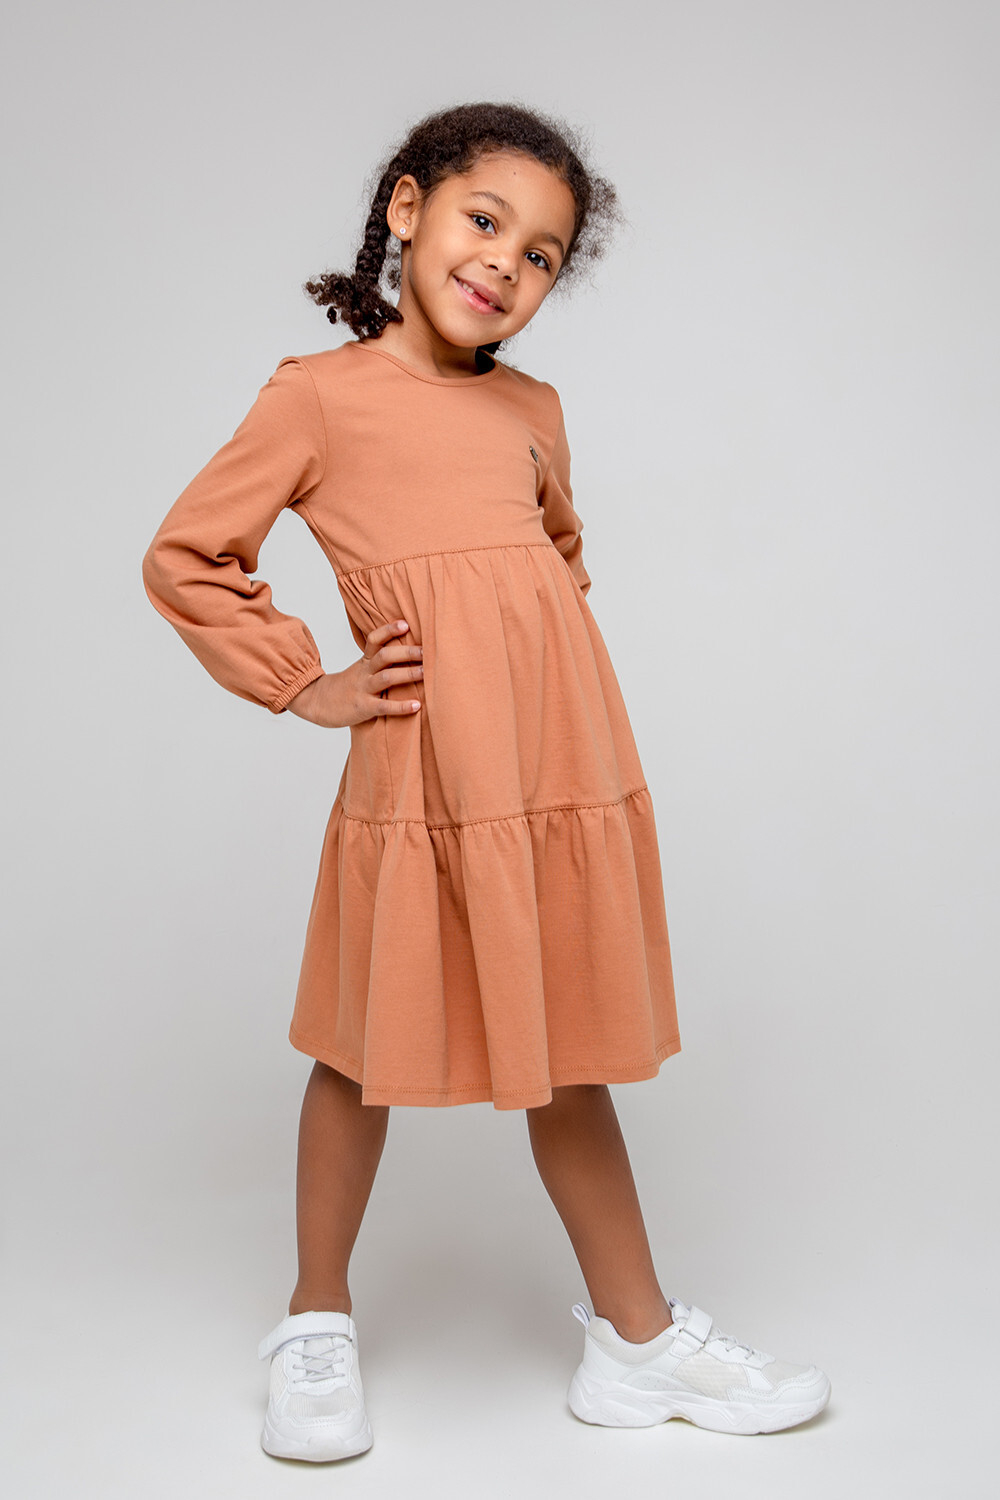 КР 5780/светло-коричневый к357 платье для девочки